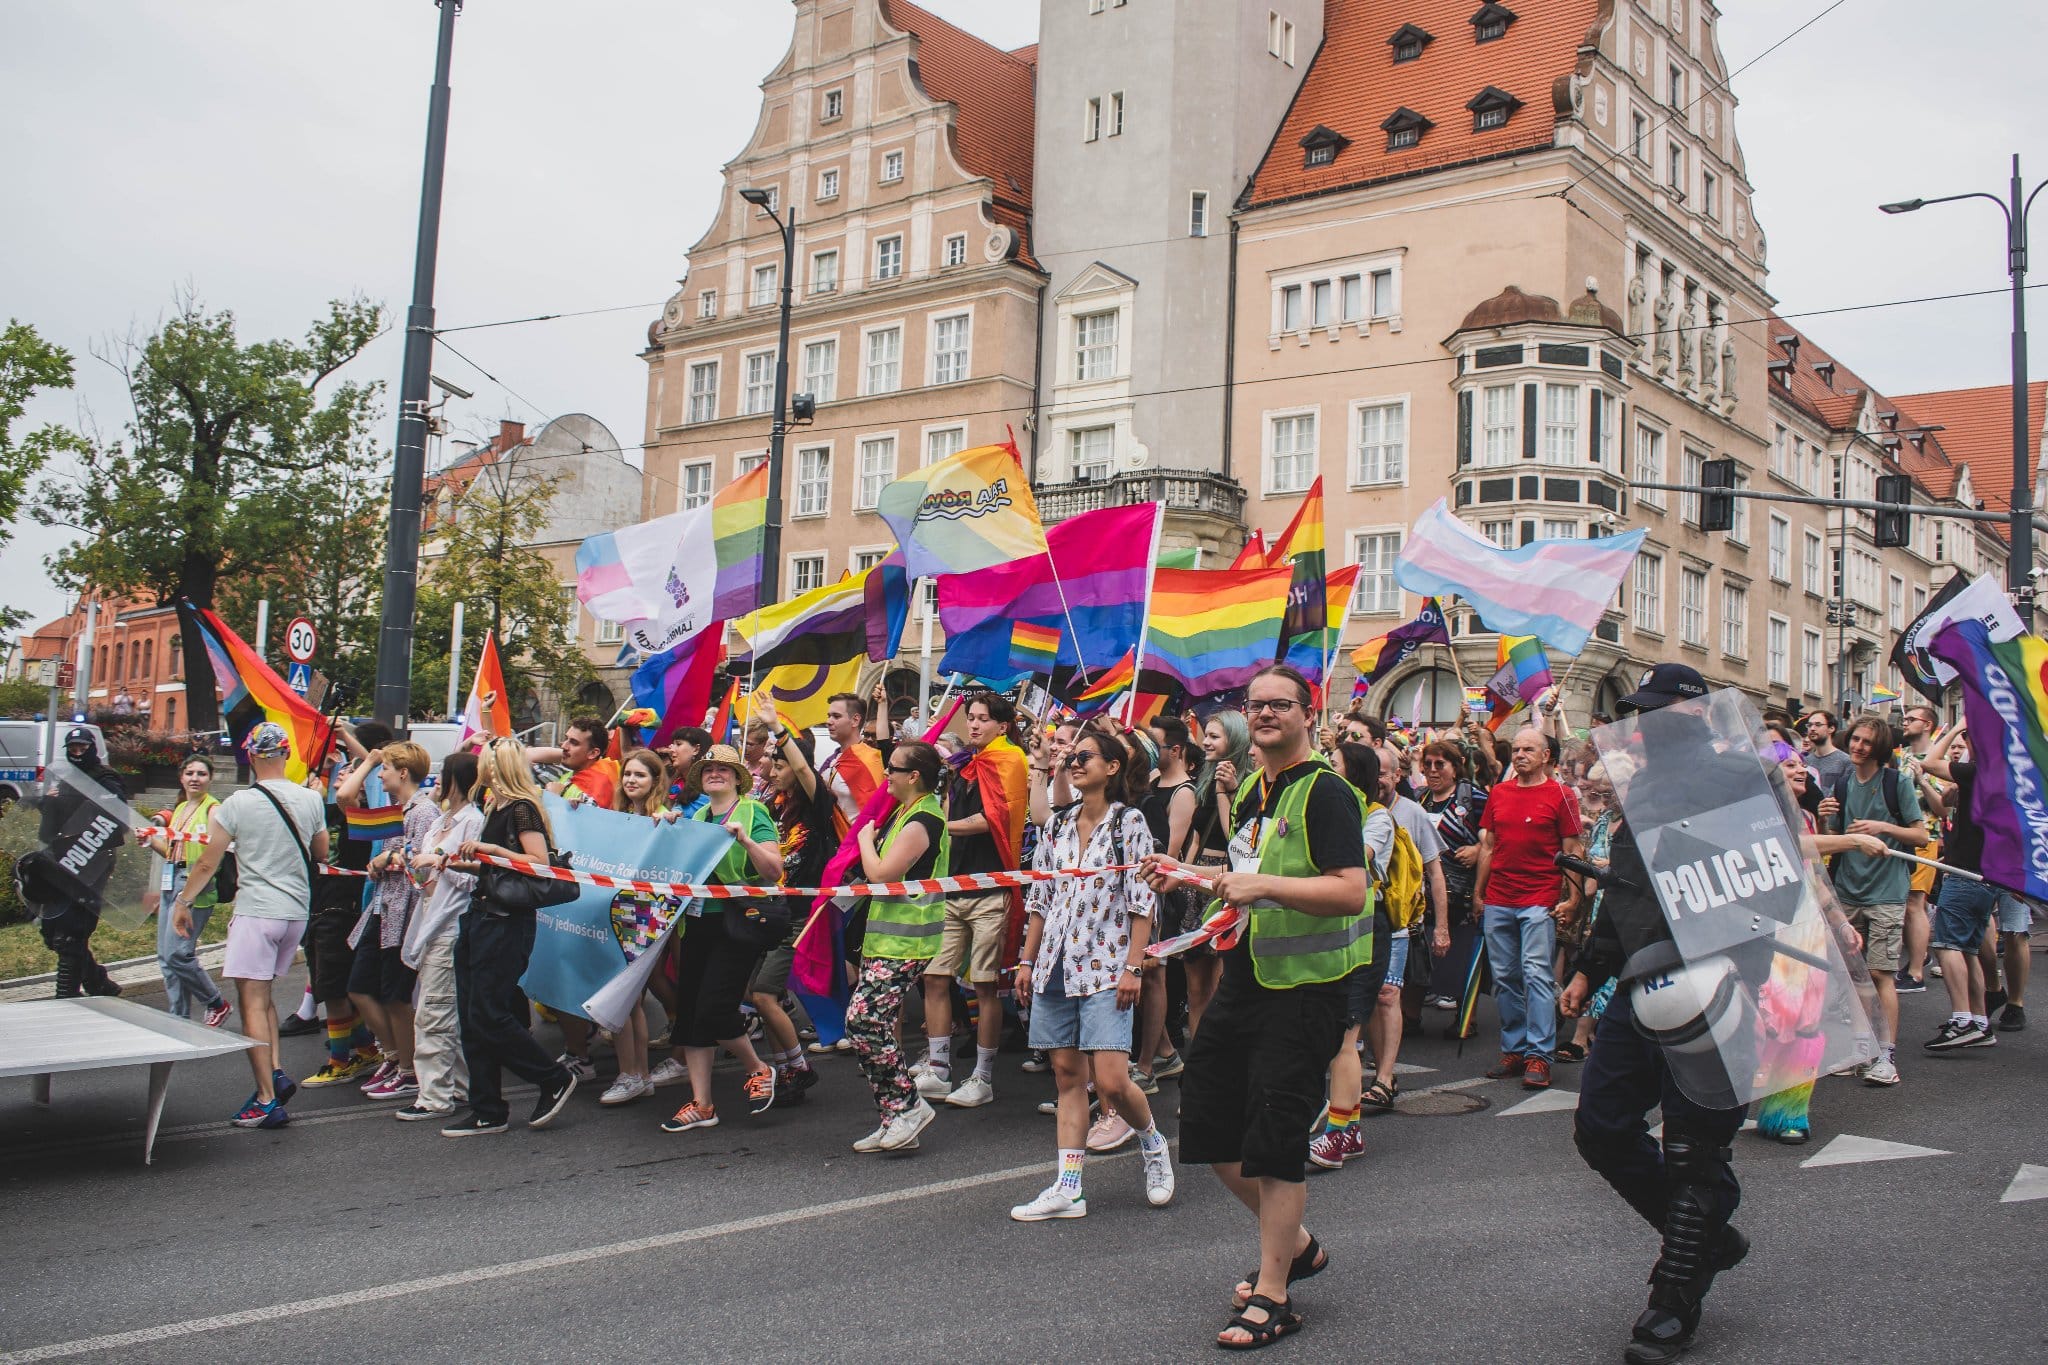 Tęczowe zakończenie Marszu Równości — afterparty z drag queens w Kortowie Olsztyn, Wiadomości, zShowcase